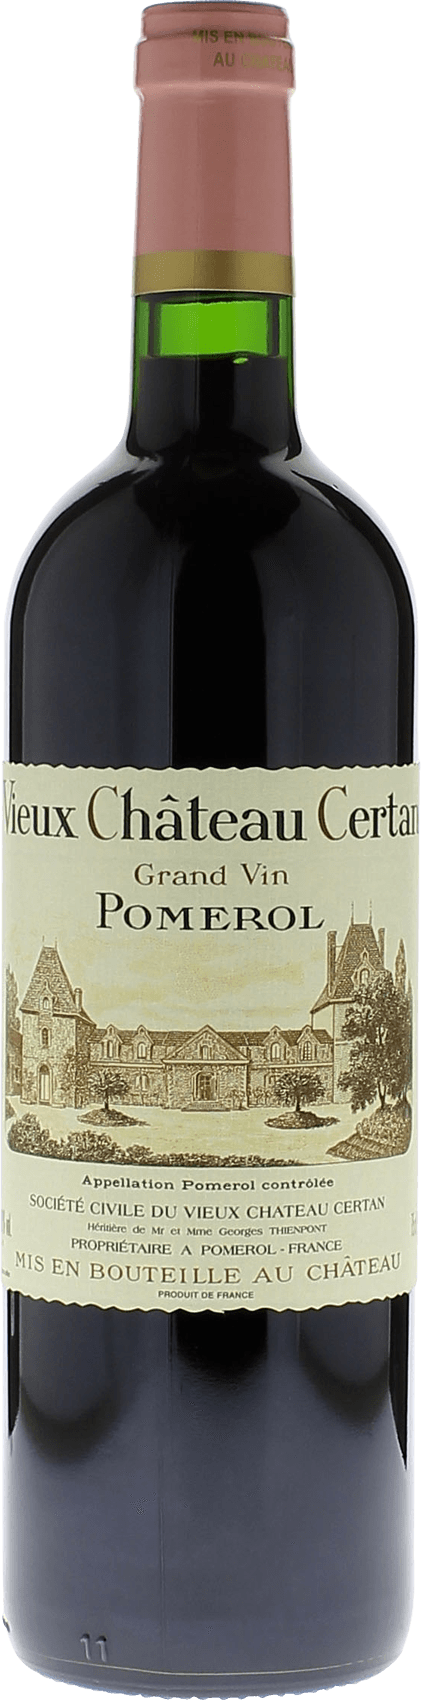 Vieux chteau  certan 1996  Pomerol, Bordeaux rouge